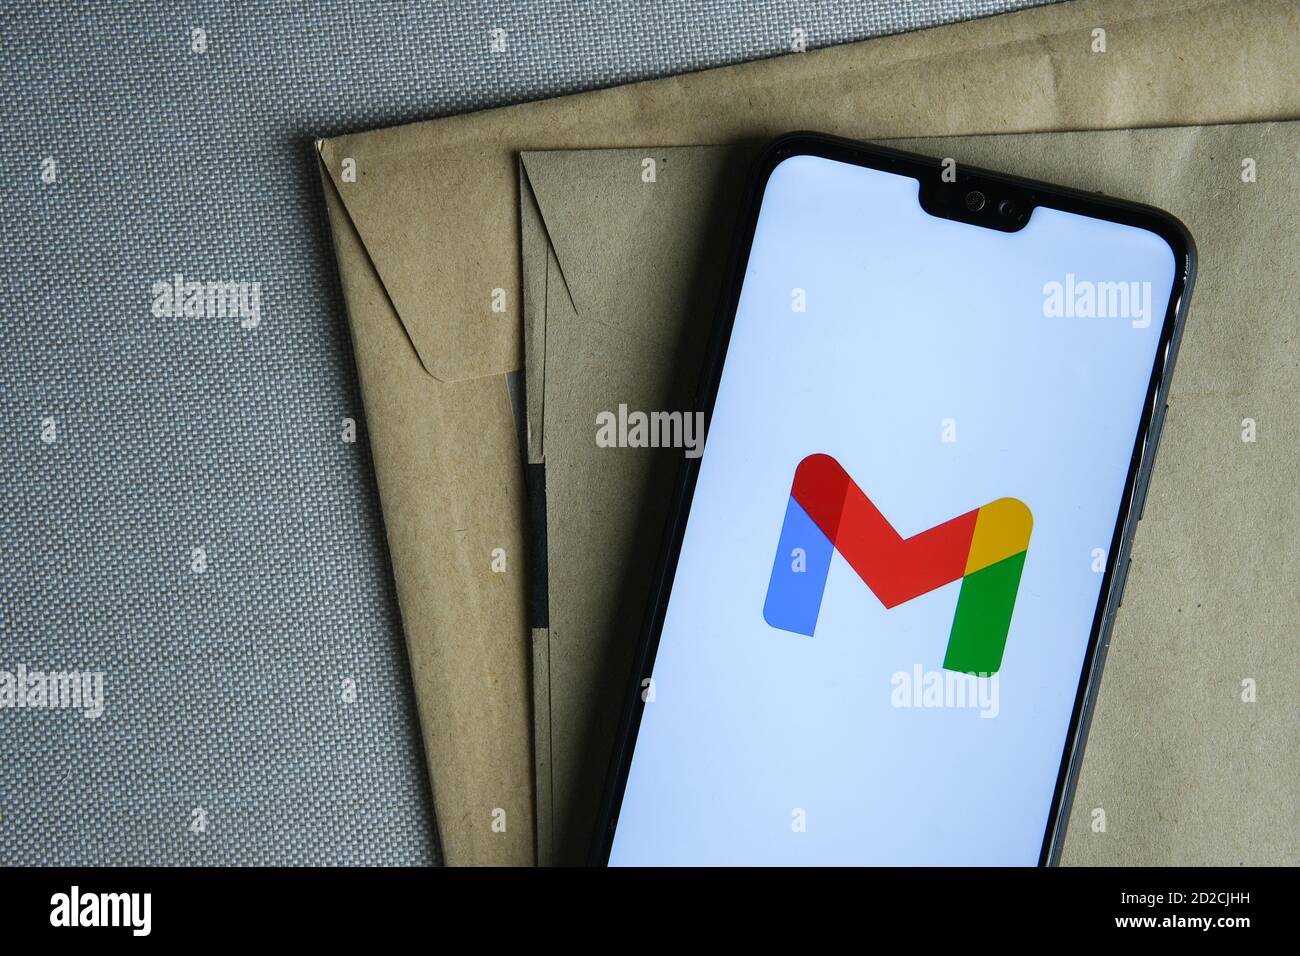 Stafford / Royaume-Uni - octobre 6 2020: Nouveau logo Google Gmail rebaptisé vu sur l'écran du smartphone placé sur des enveloppes brunes. Concept. Banque D'Images